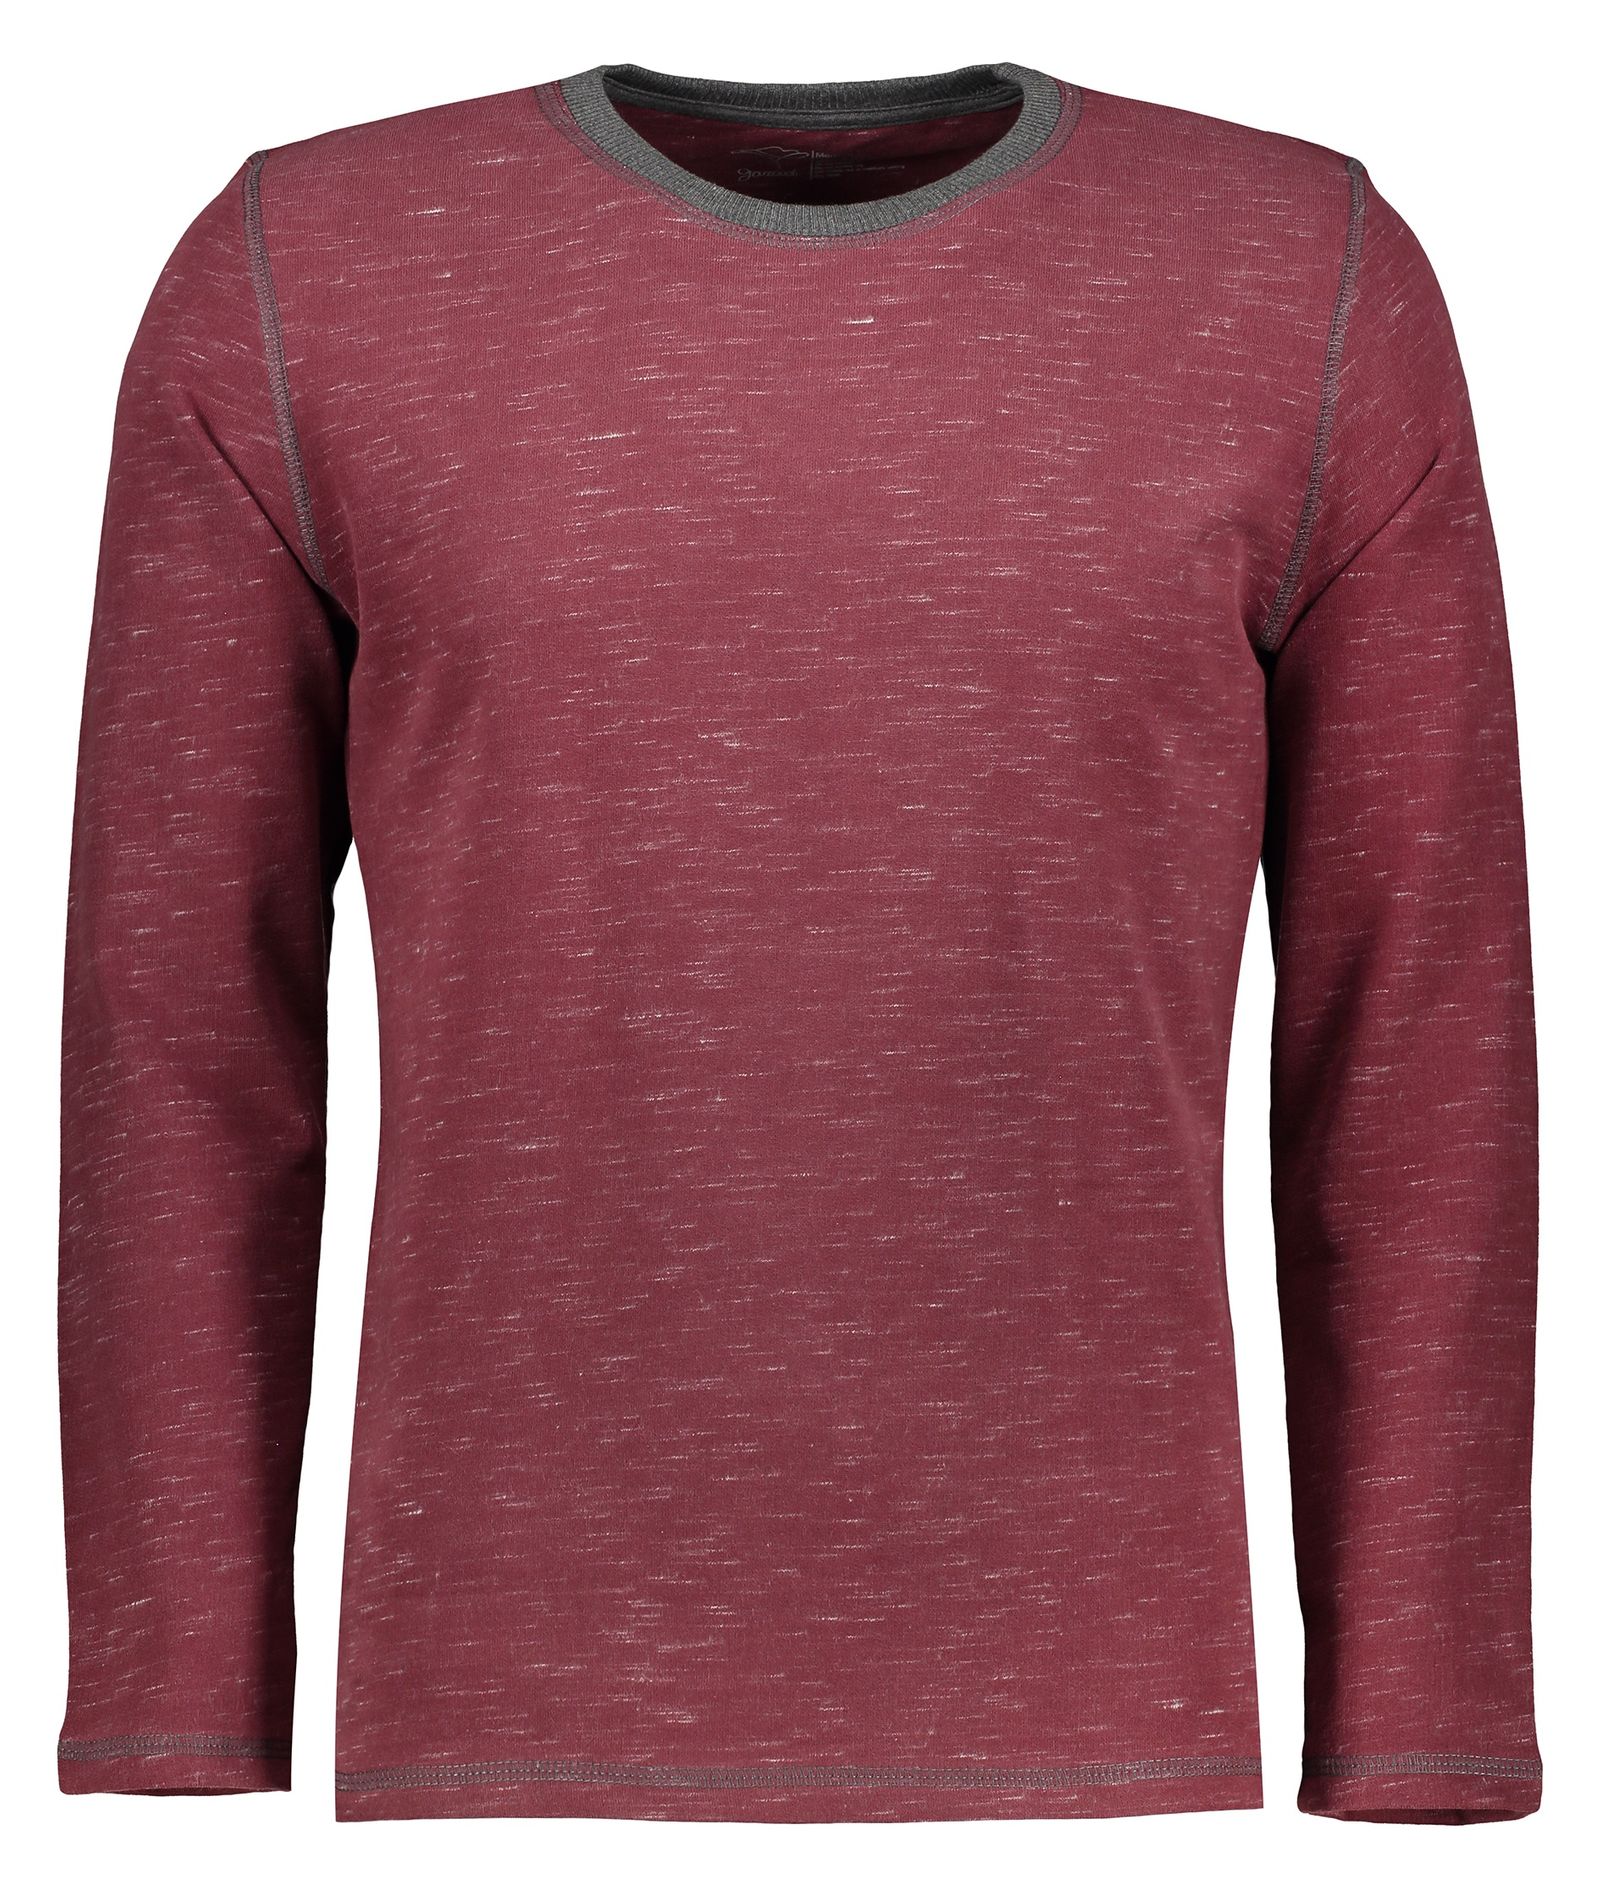 تی شرت مردانه گارودی مدل 2003107016-85 - عنابی - 1